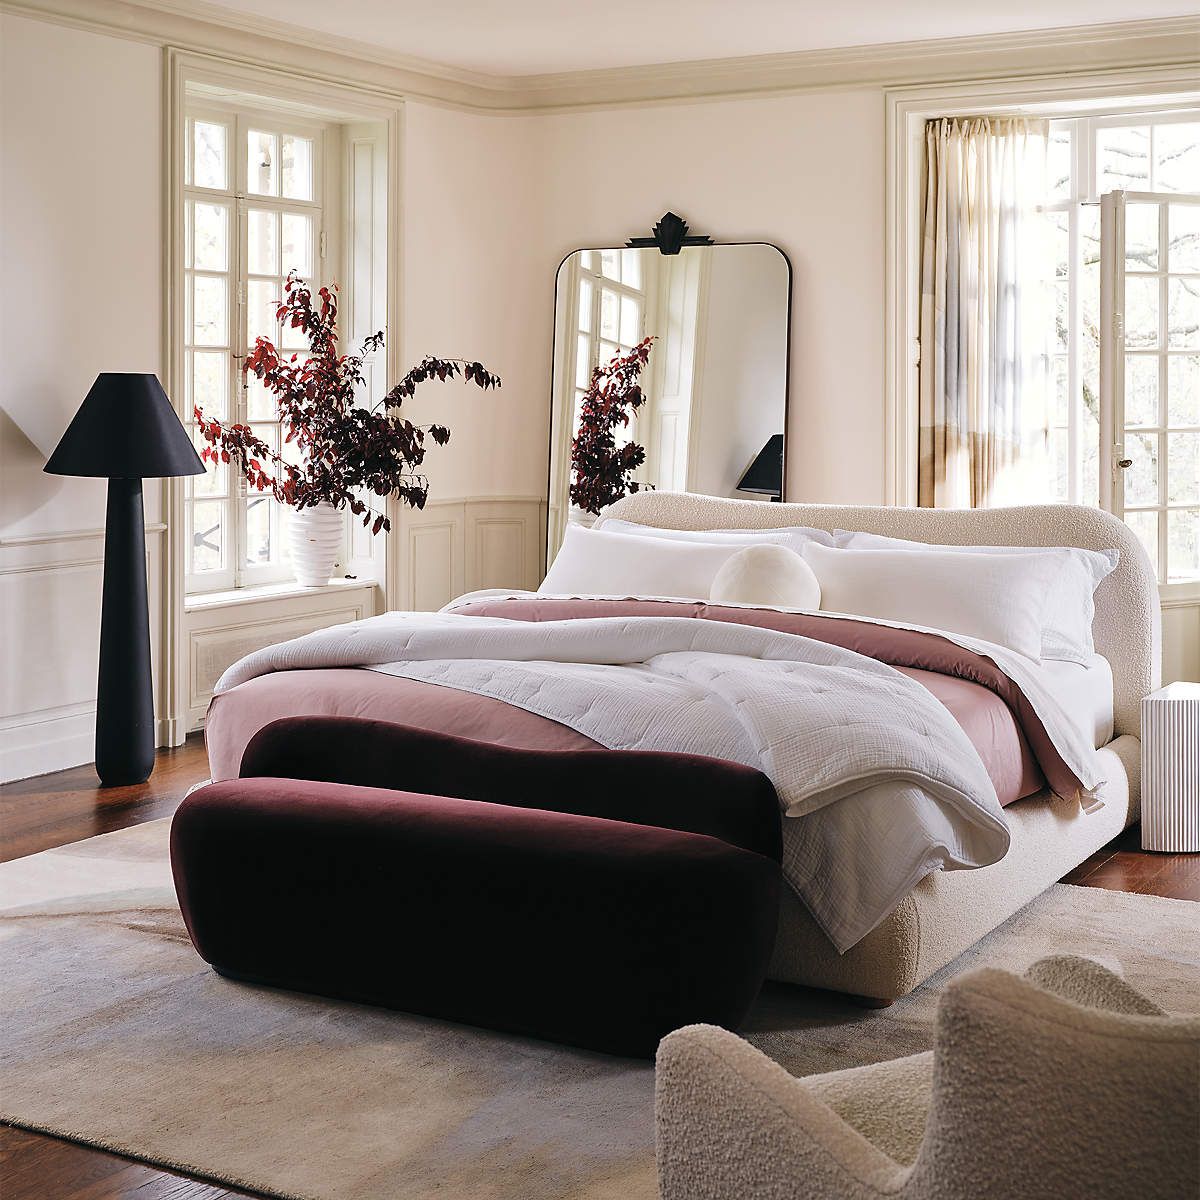  Giường ngủ bọc nệm cao cấp Diana phong cách Bắc Âu Rubies House 